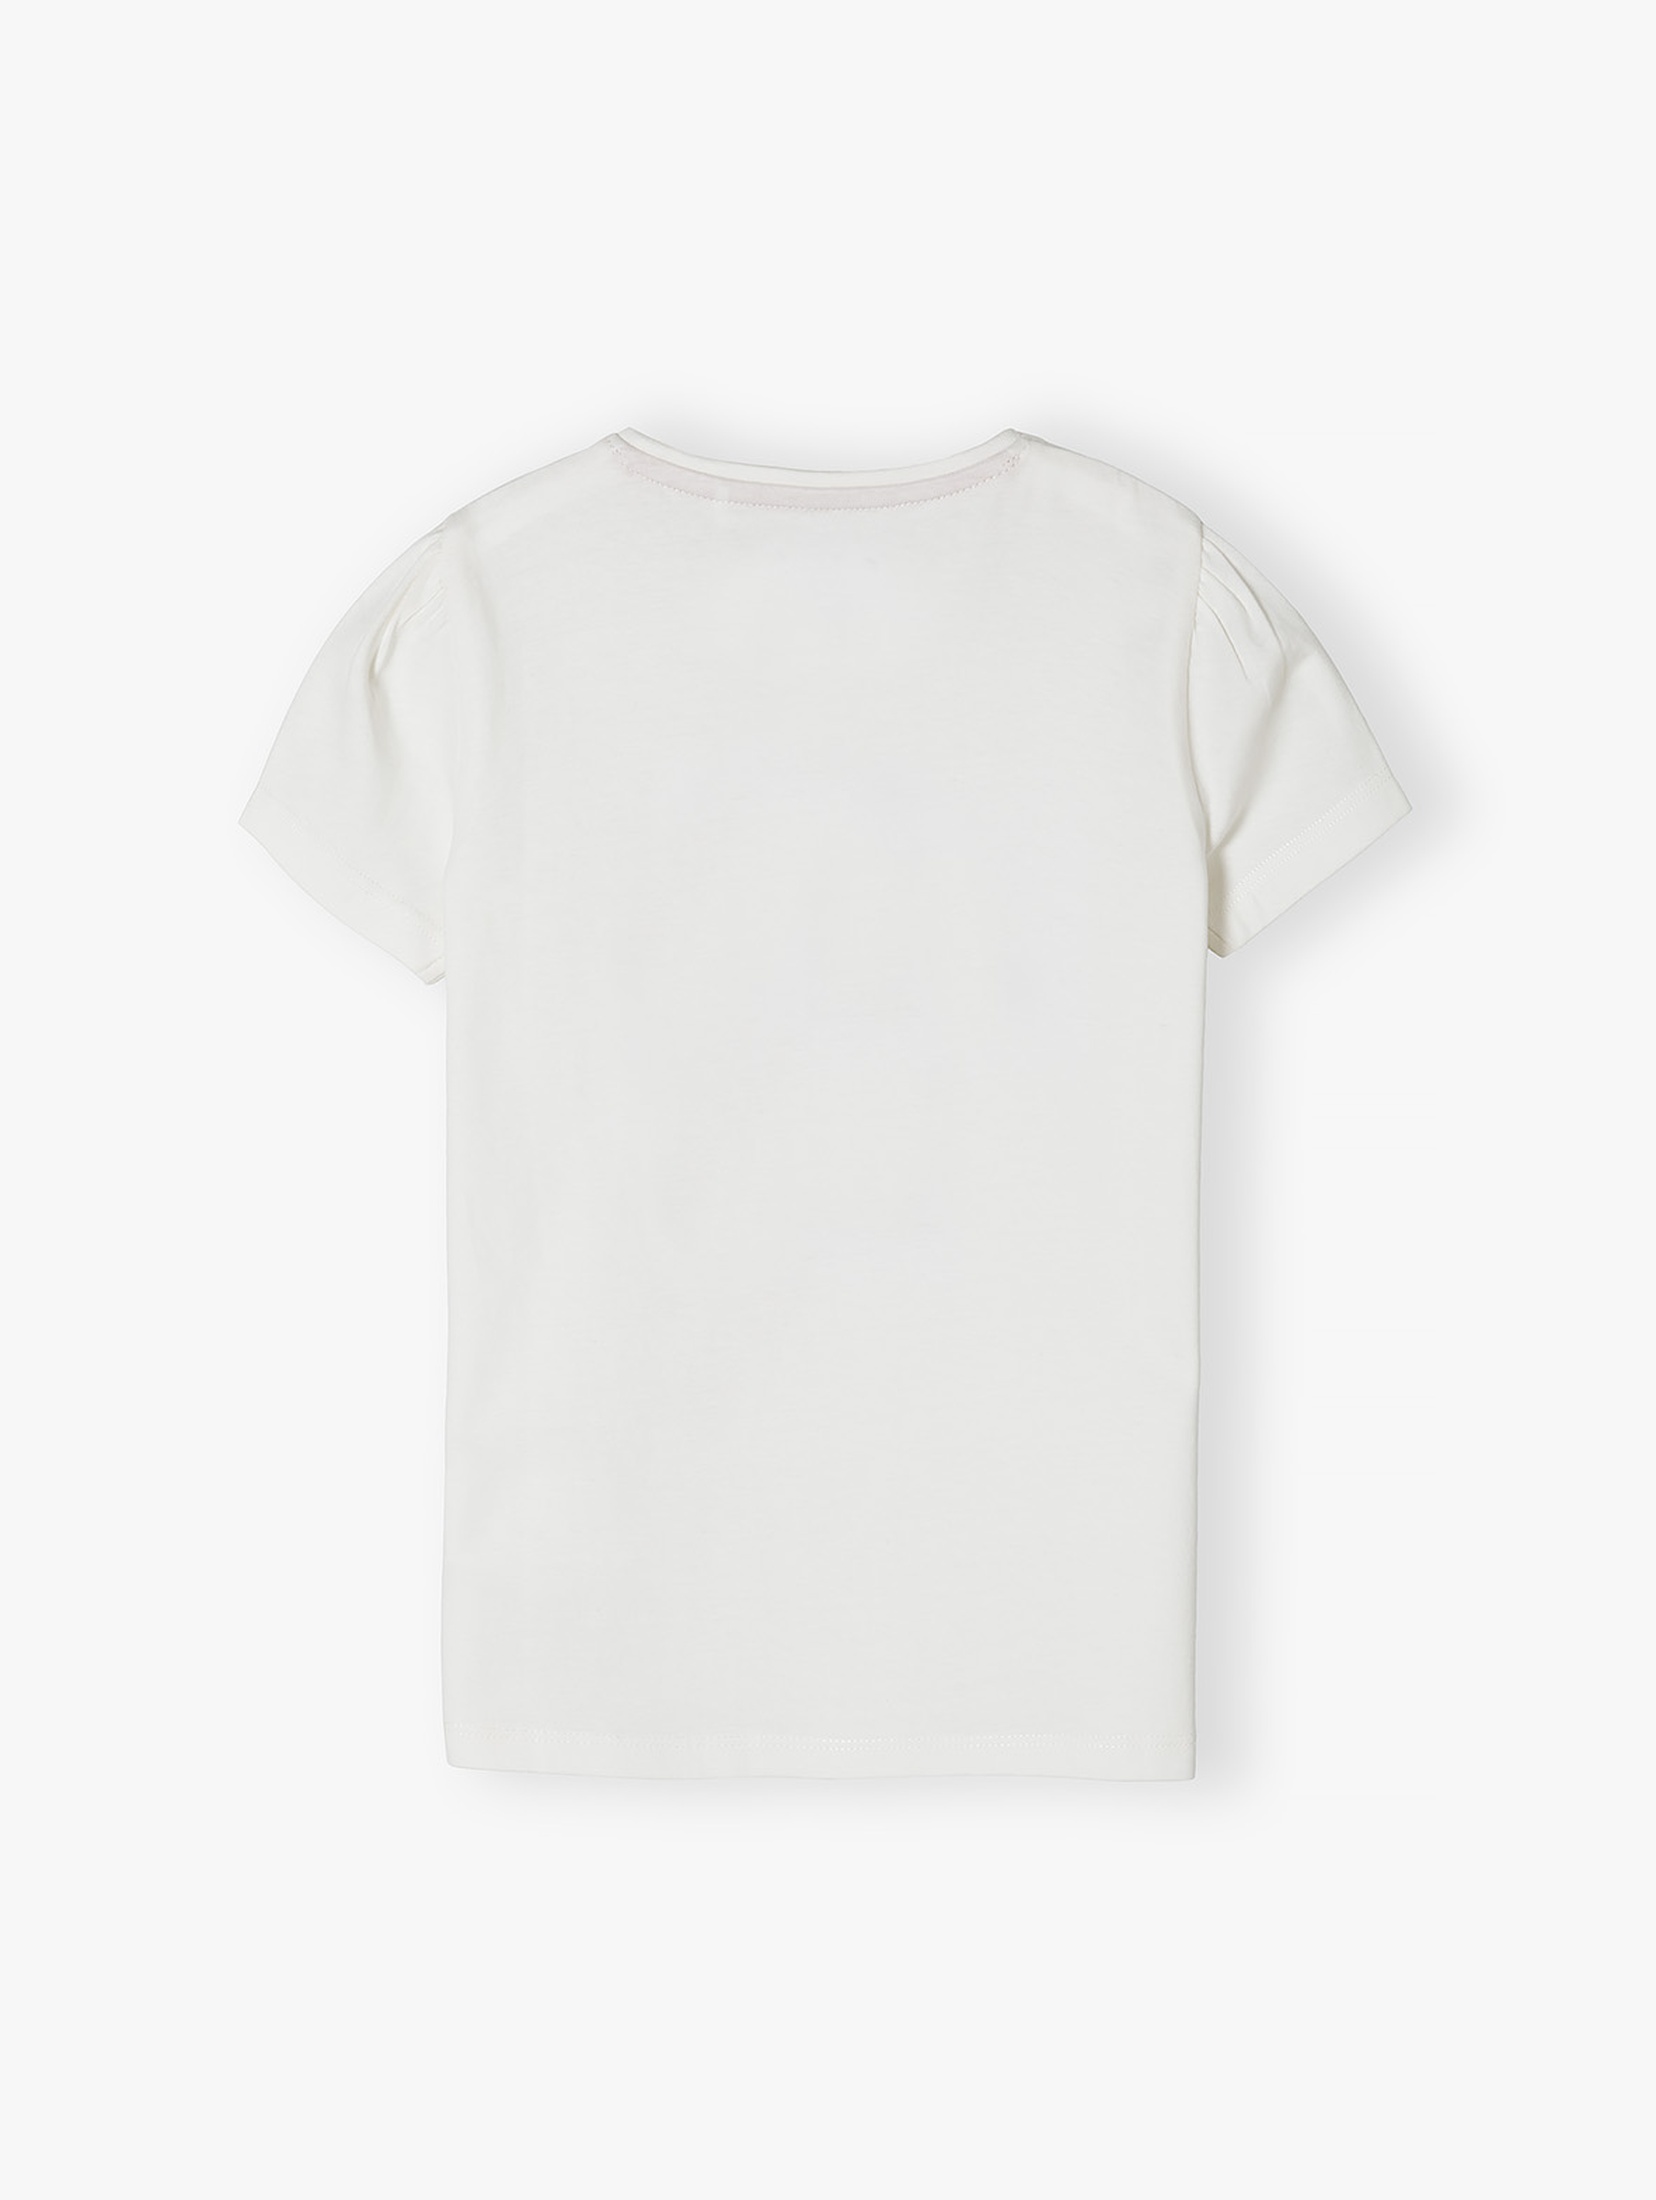 Bawełniana koszulka dla dziewczynki z nadrukiem